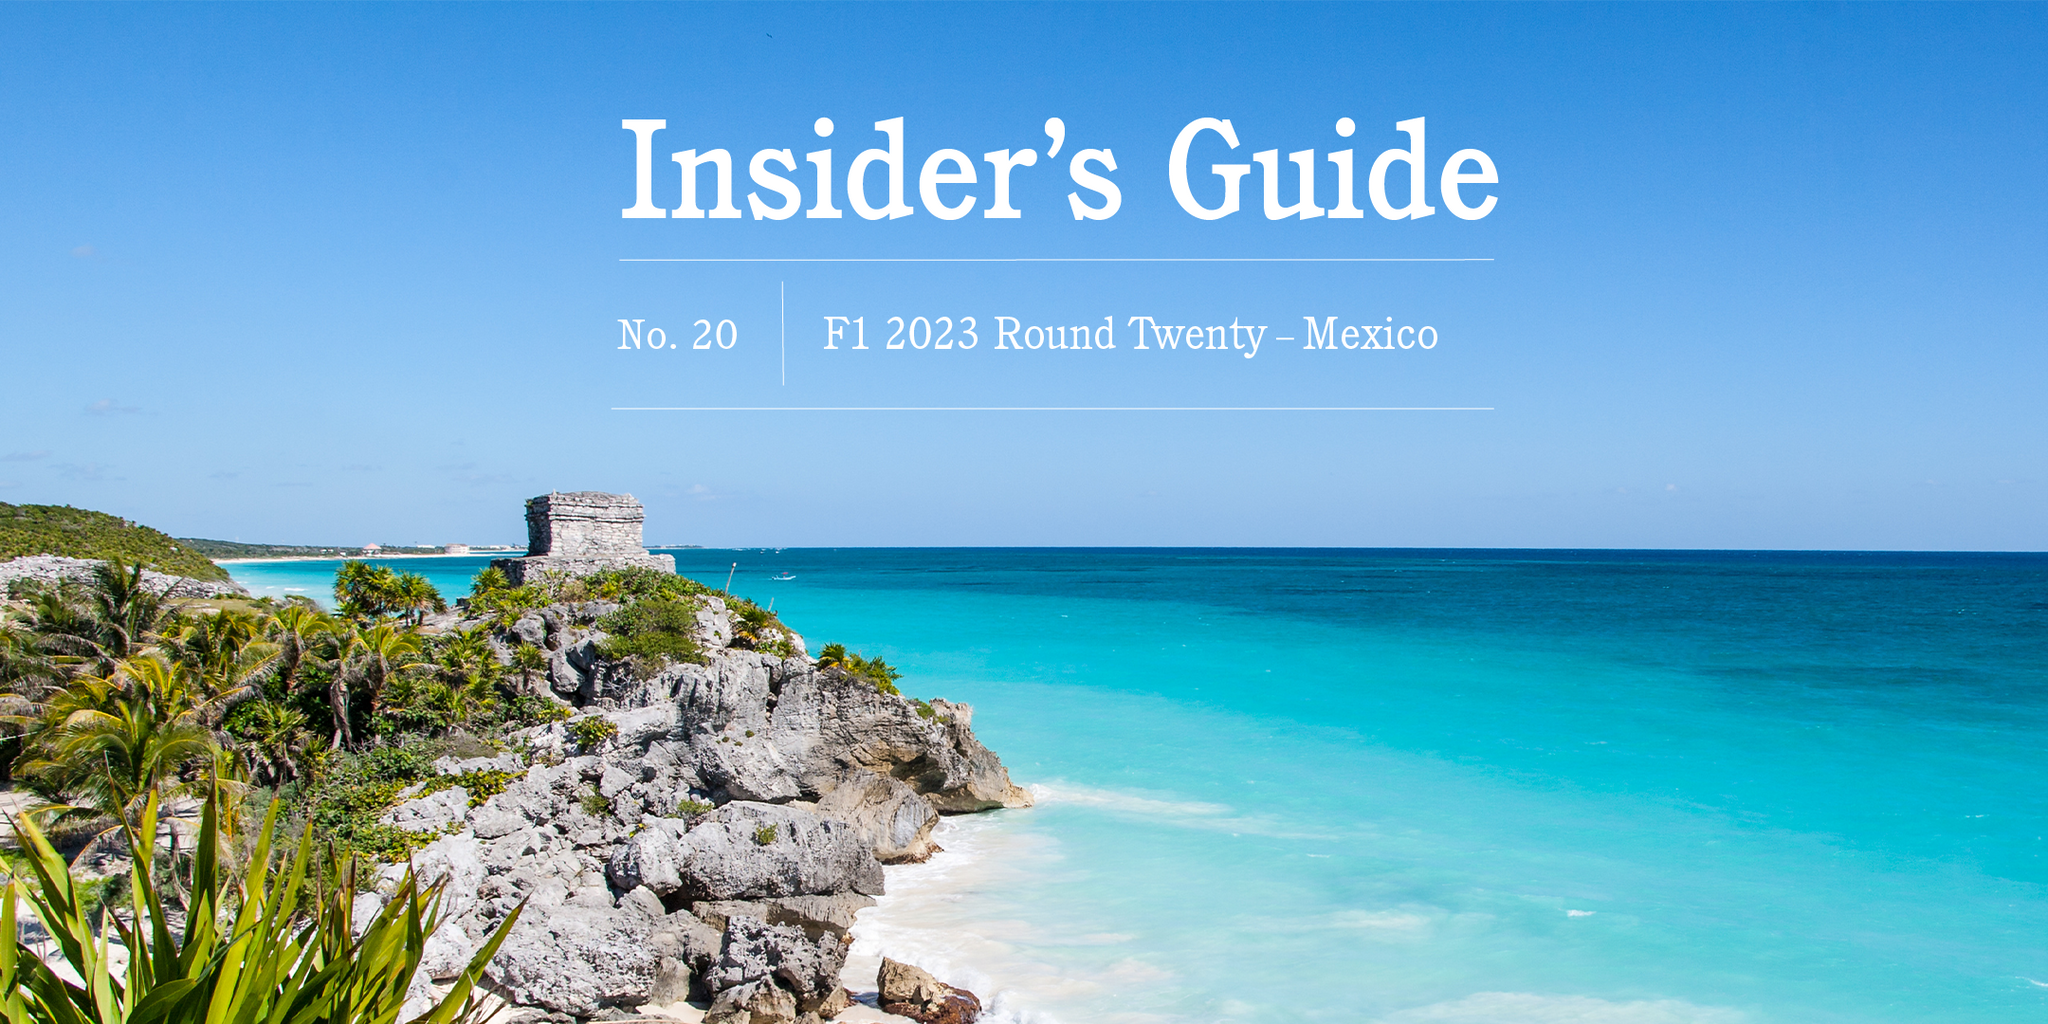 F1 2023 Insider’s Guide No. 20 – Mexico